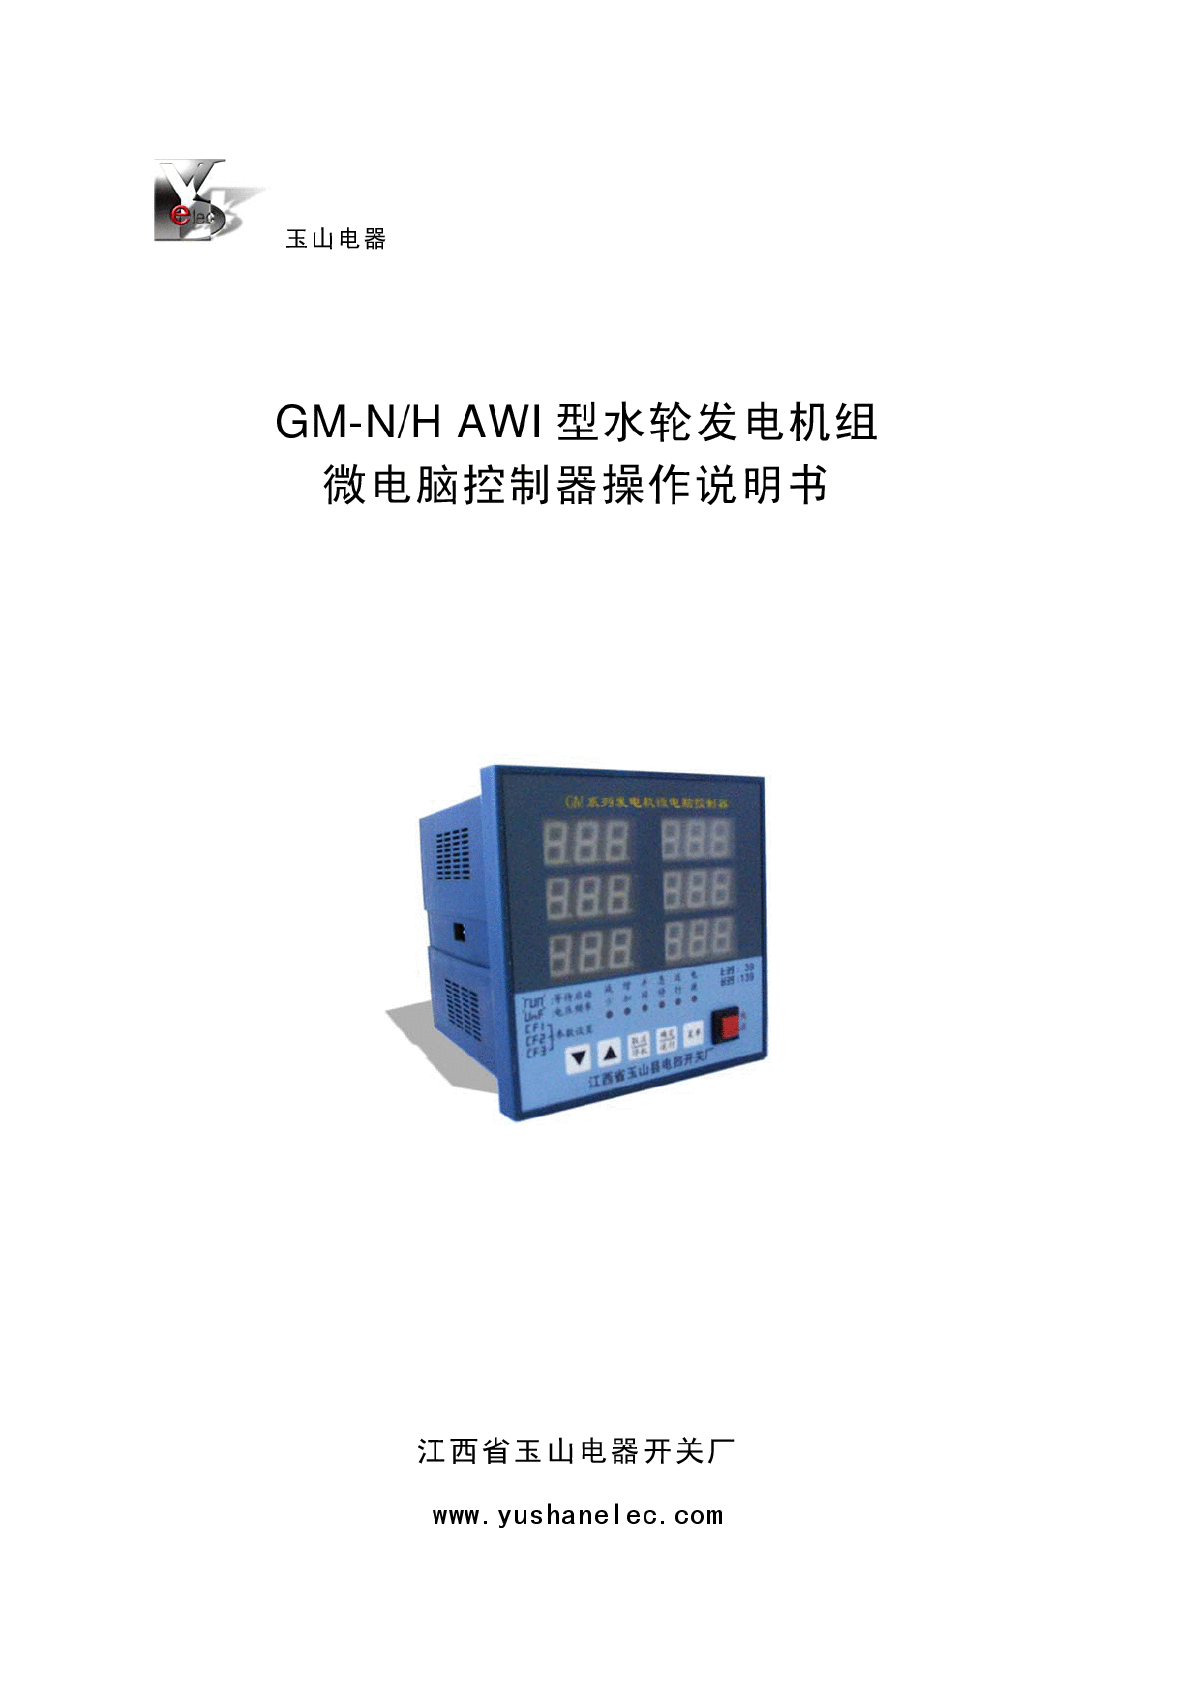 GM系列水轮电机组微电脑控制器-图一